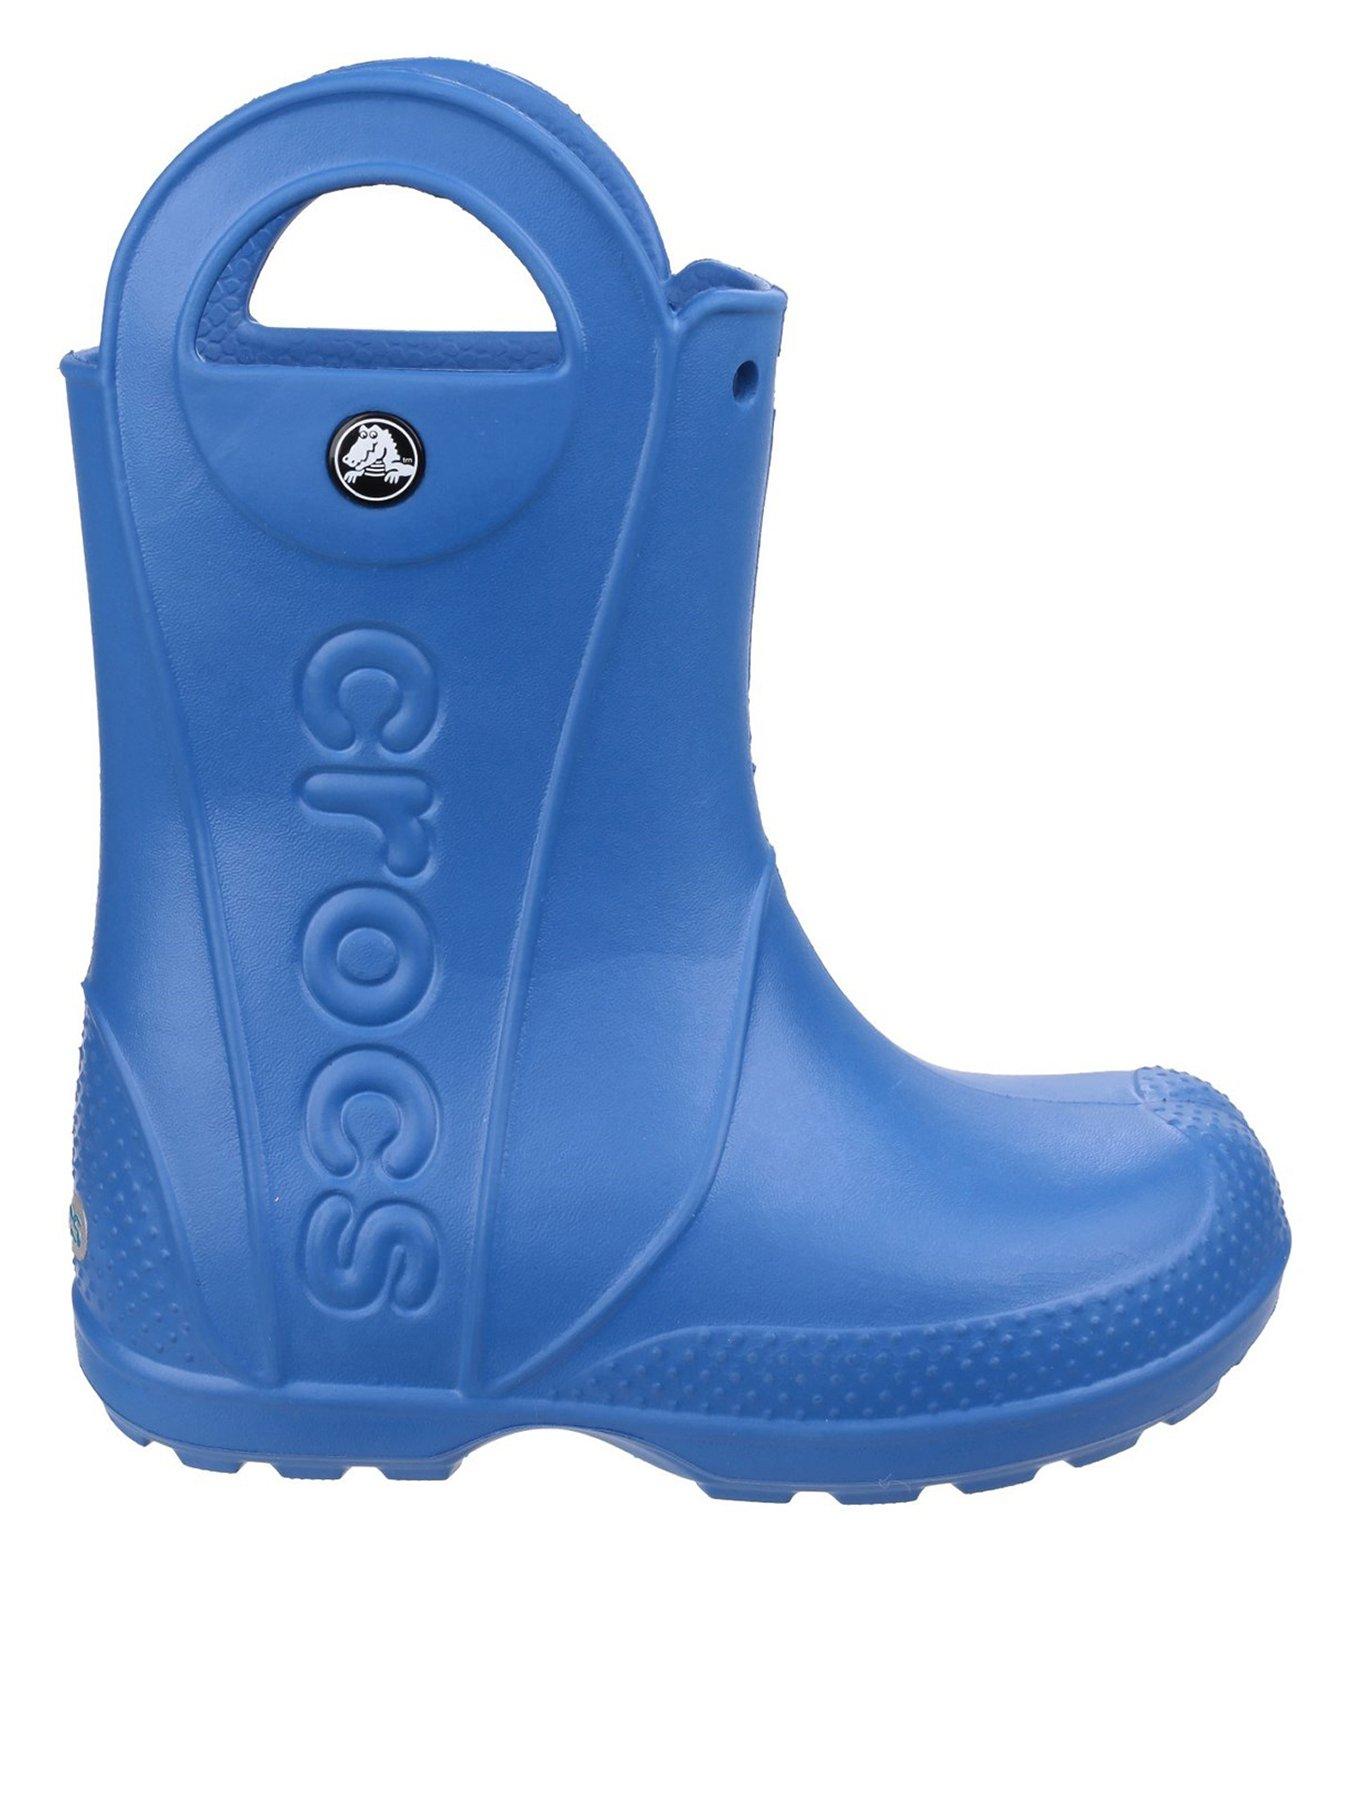 Crocs Handle It Rain Boots - Blue, Blue, Size 11 Younger